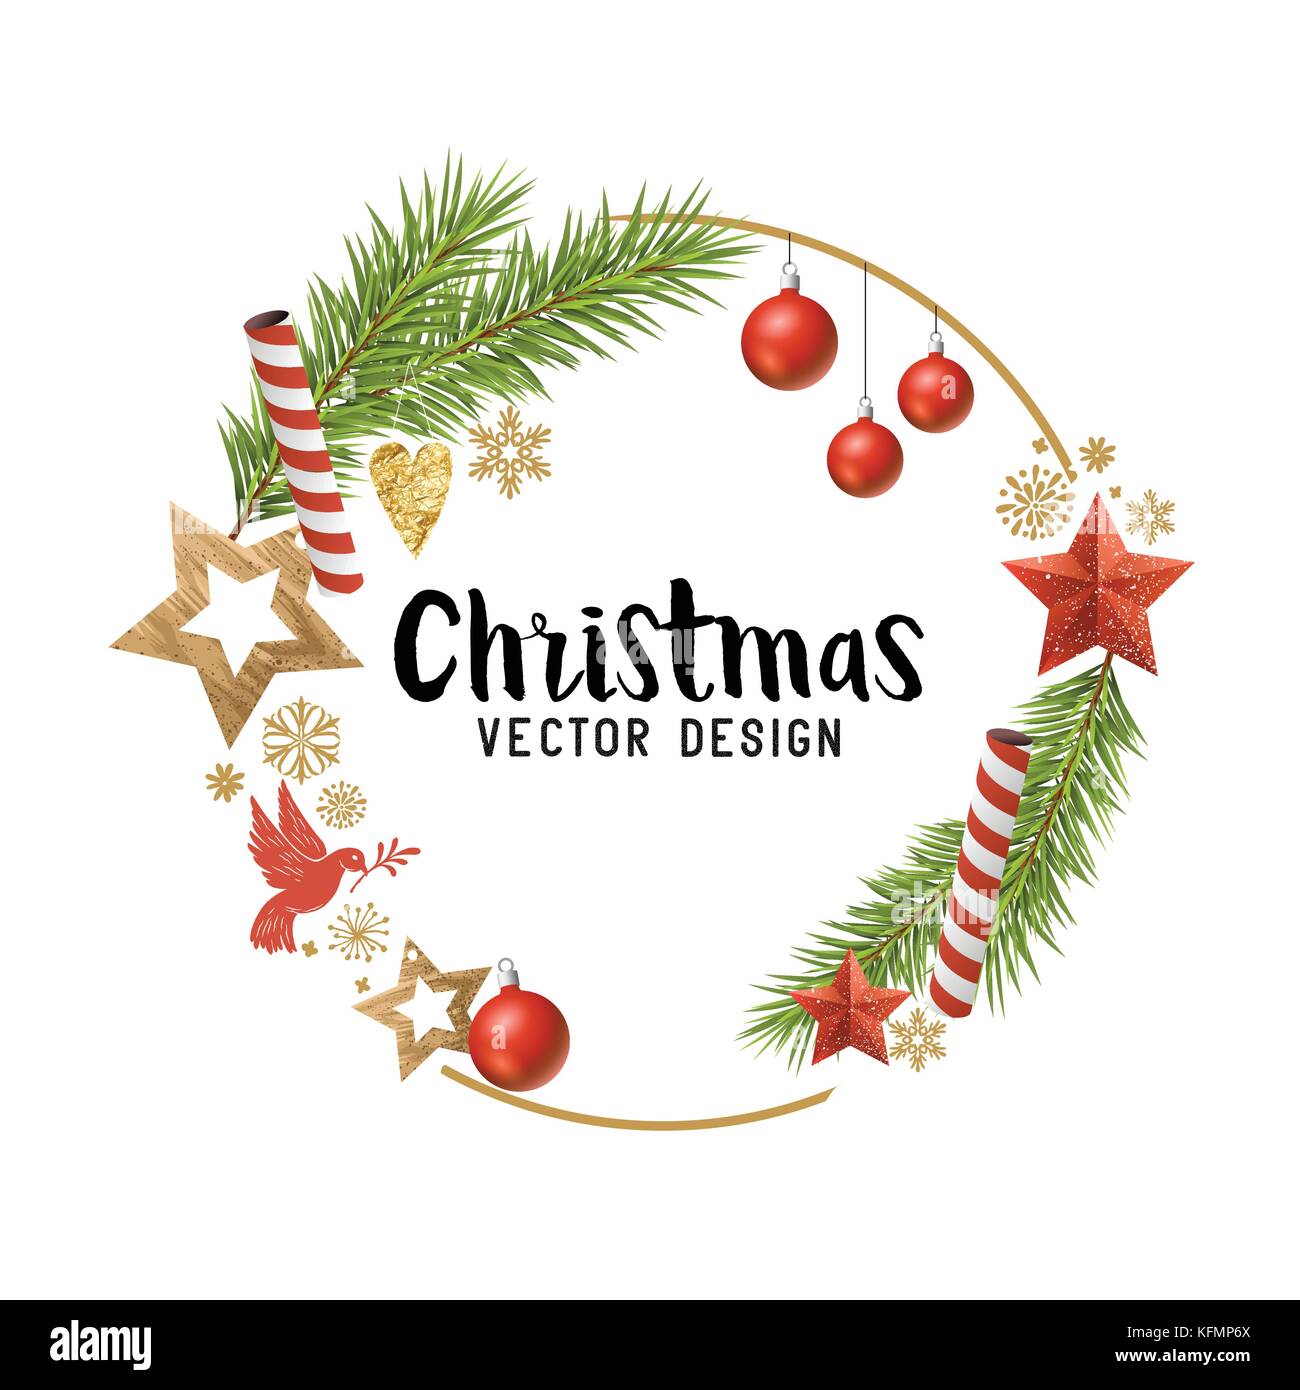 Weihnachtsschmuck Zusammensetzung mit Fir Tree Branches, Holz- Sterne und Flitter. Vector Illustration Stock Vektor